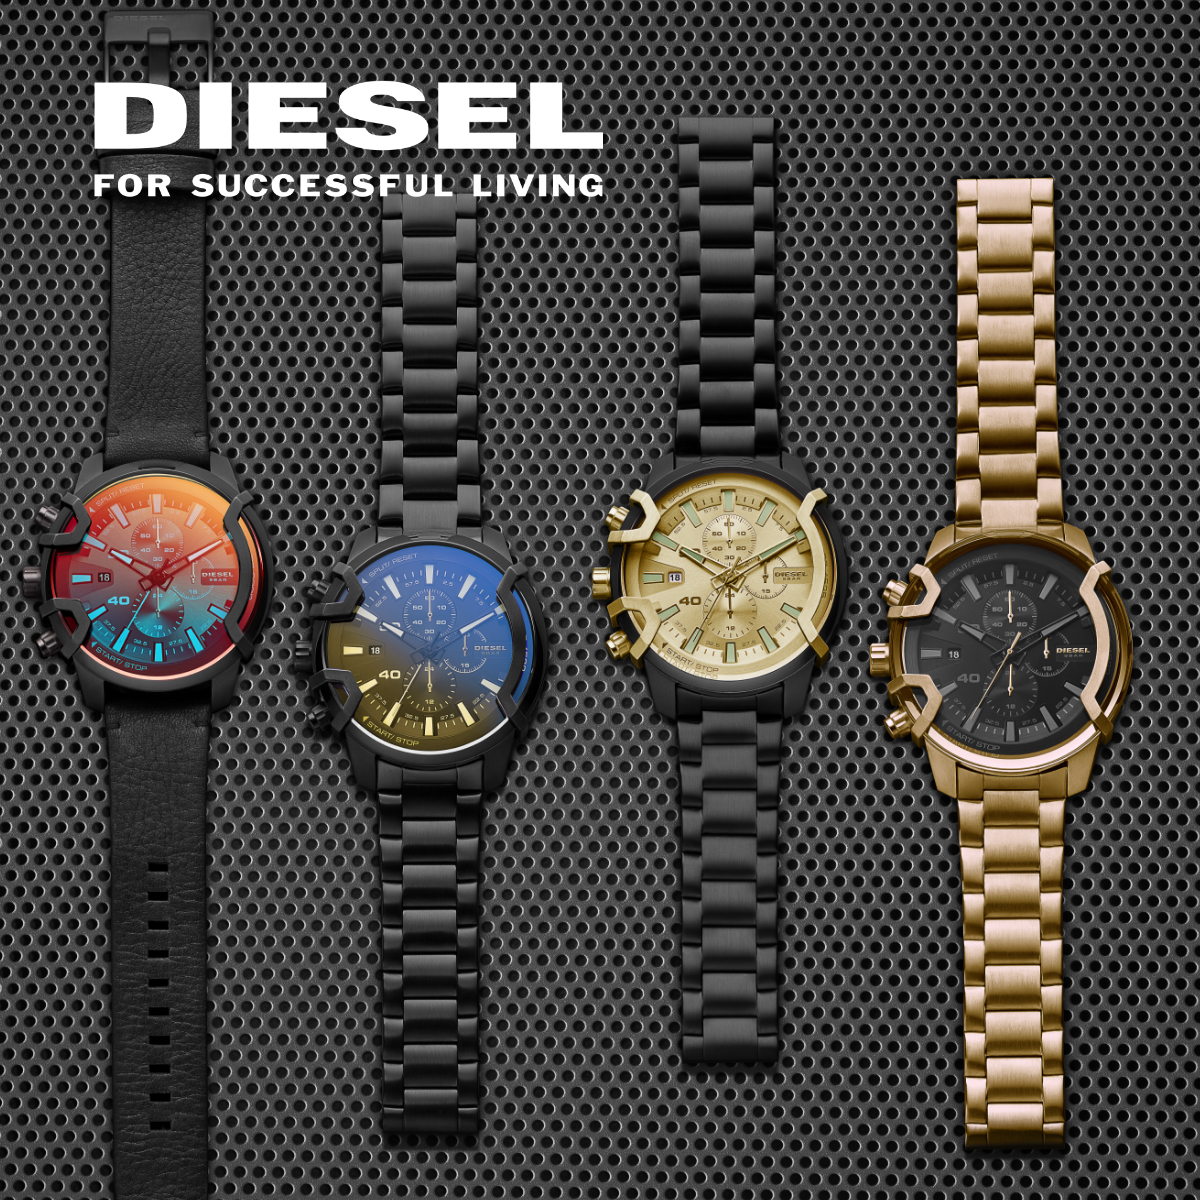 Diesel watches